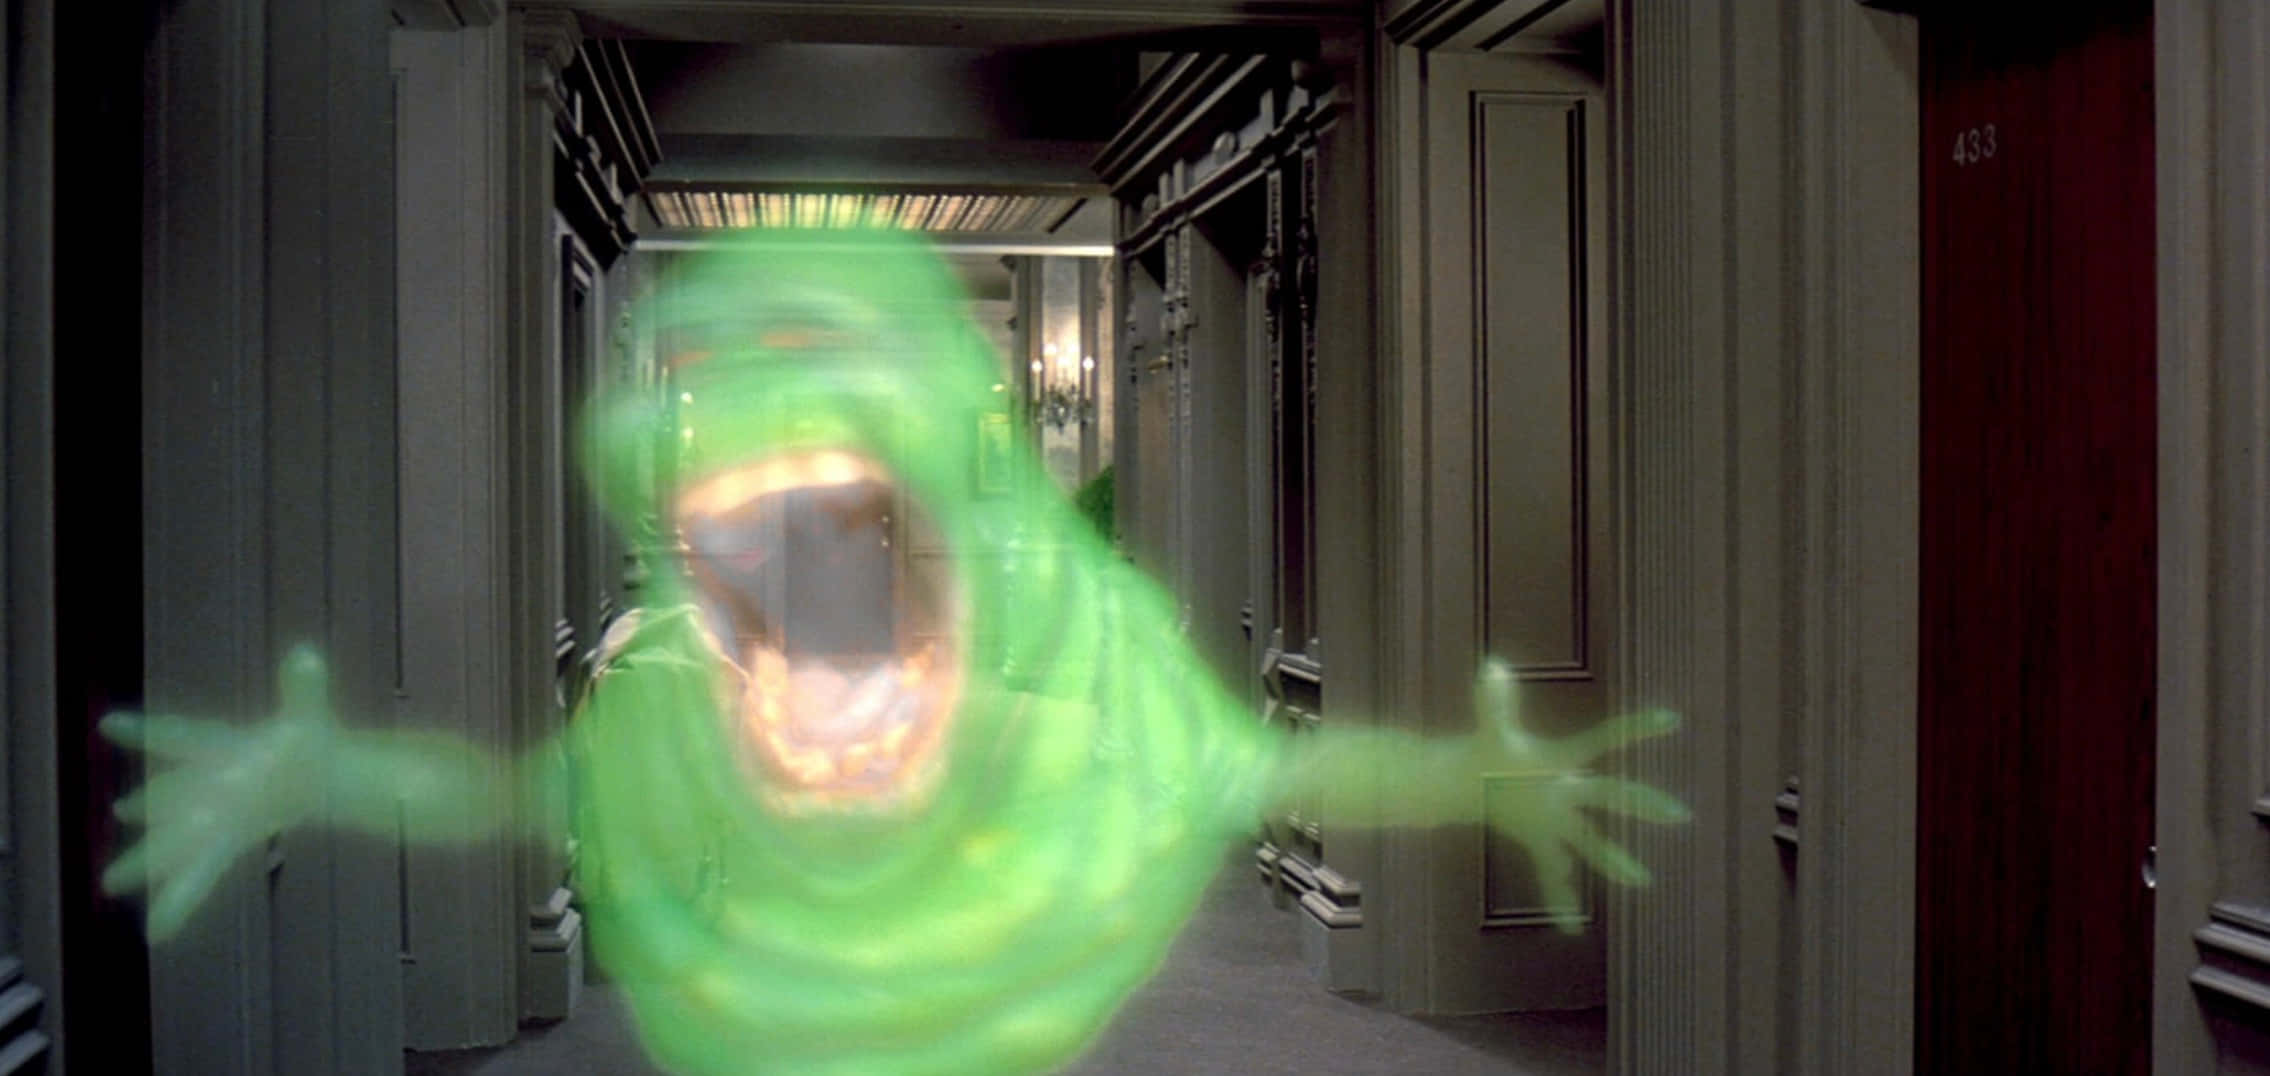 Ghostbustersbild Mit Einer Größe Von 2270 X 1076 Pixeln.